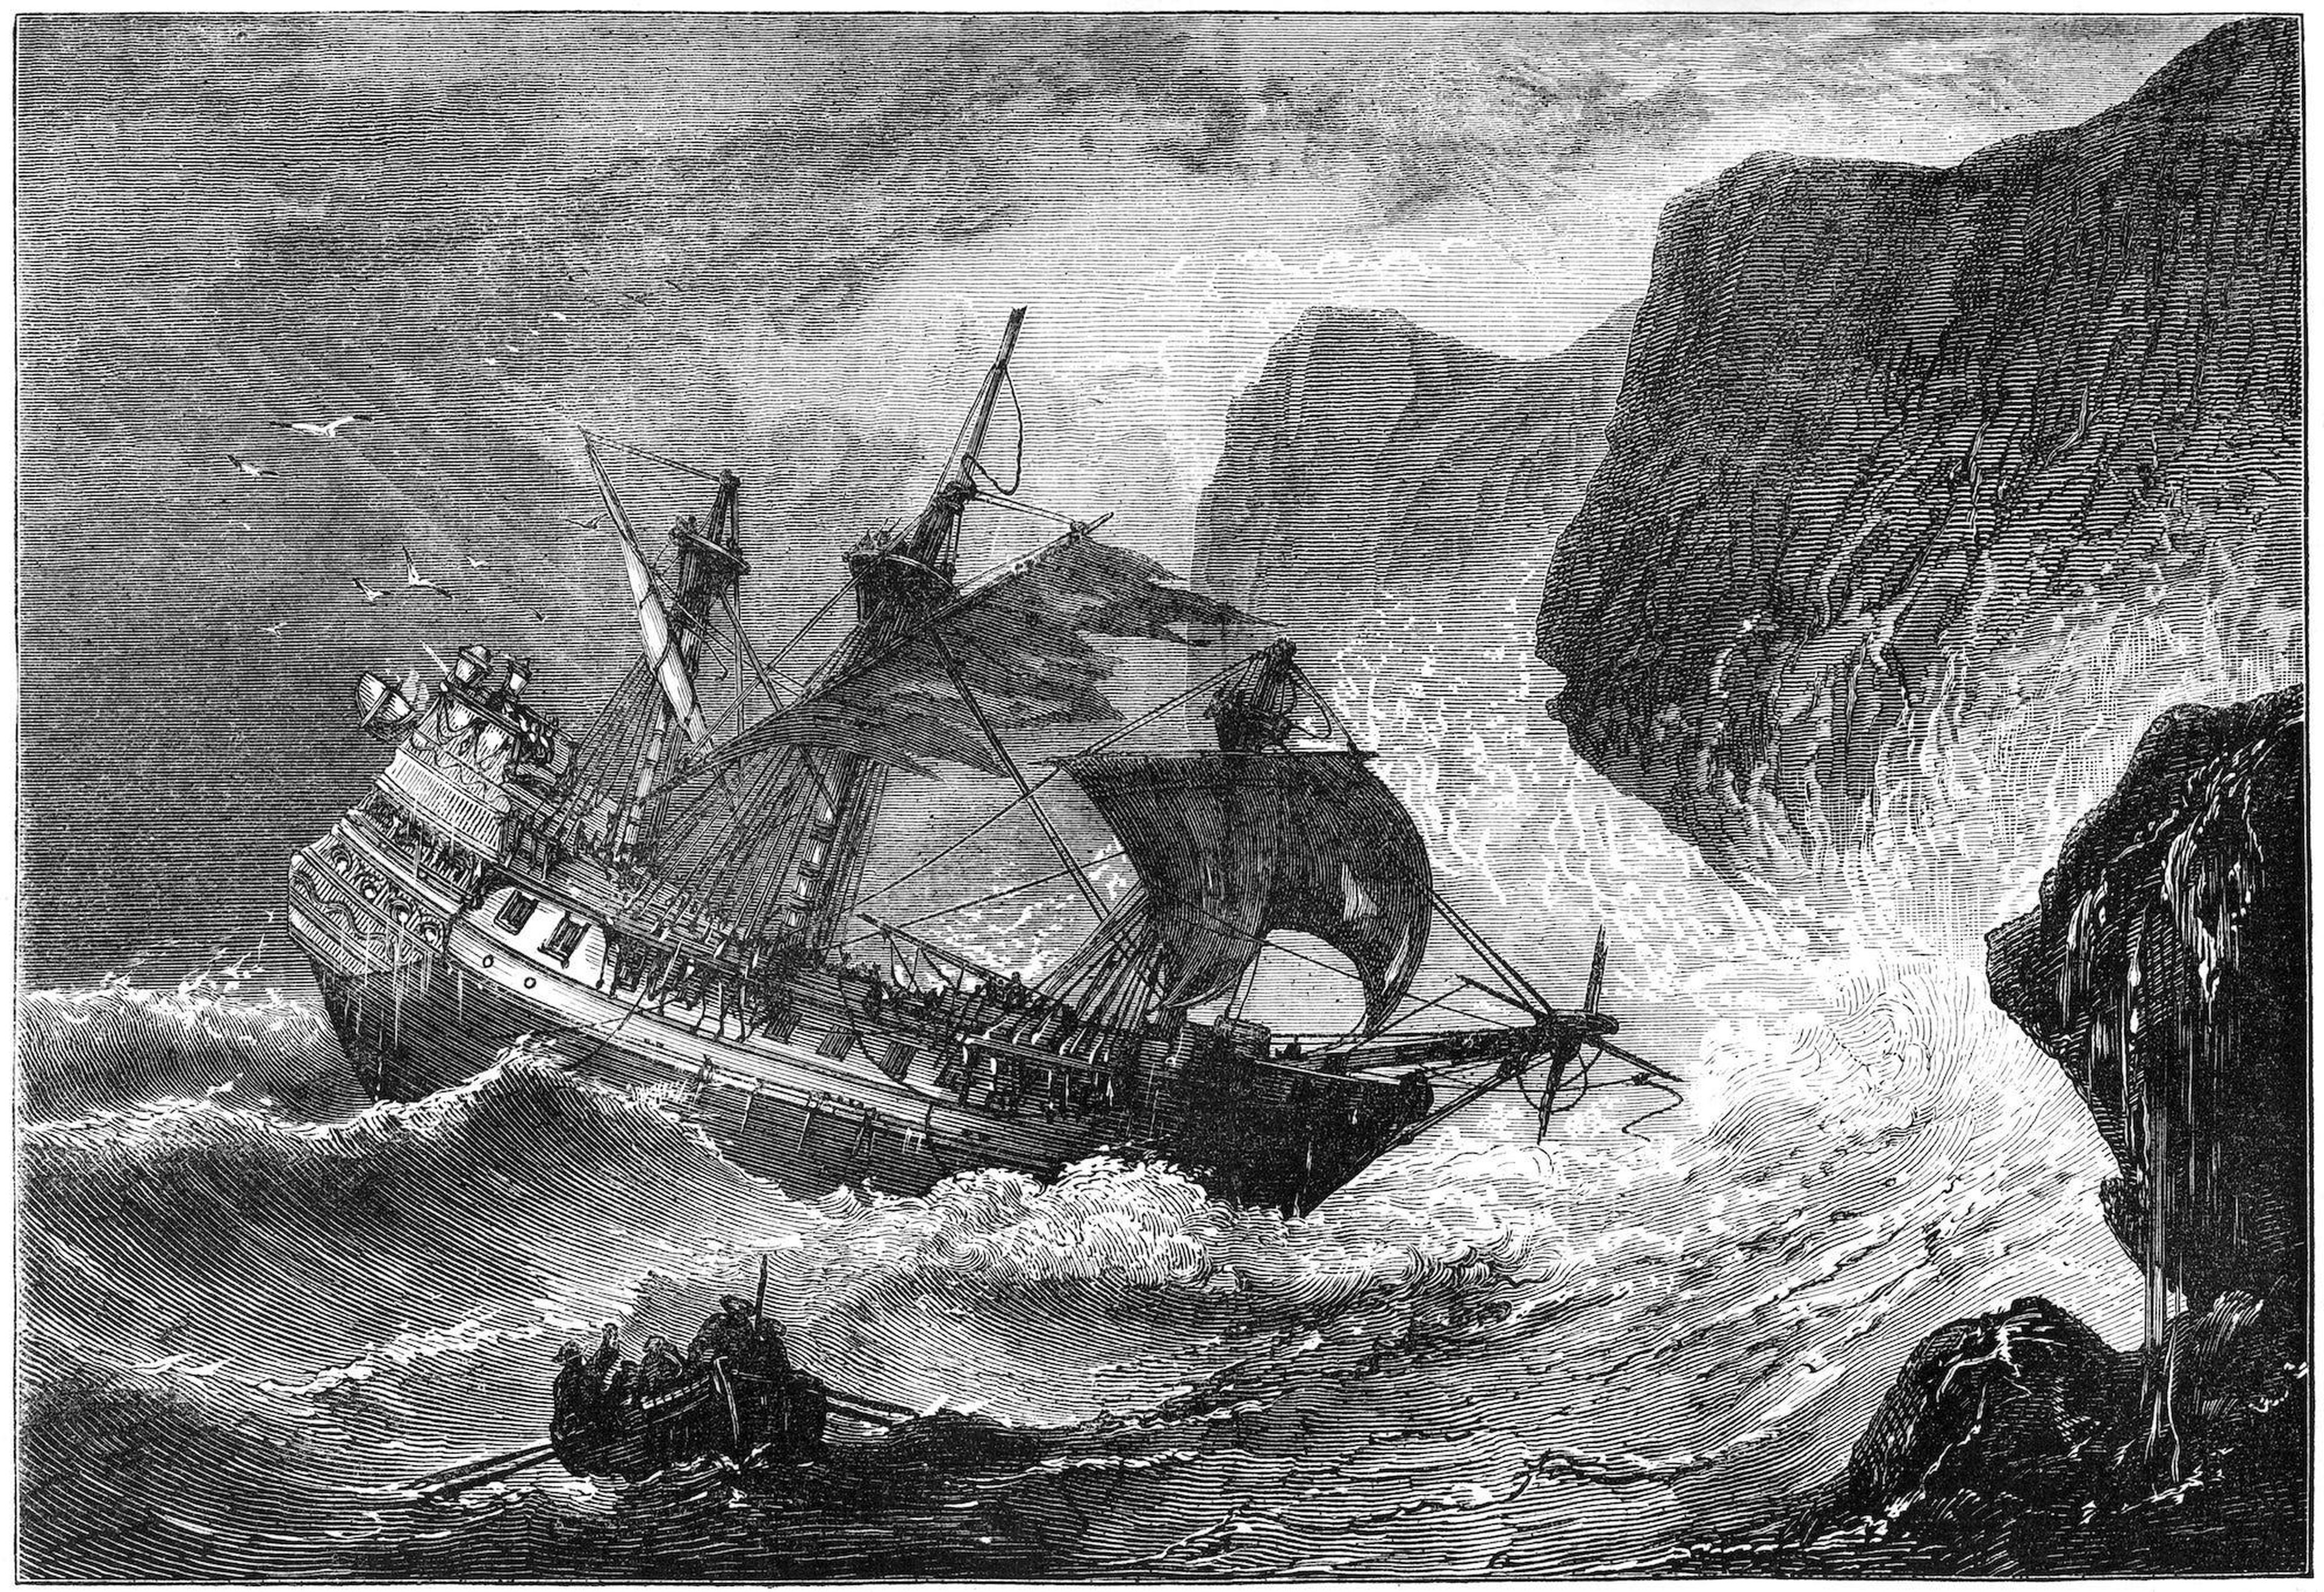 Ilustración del almirante Somers dirigiendo su barco a Bermudas, 1609 (c1880). Este almirante (1554-1610) fue el fundador de la colonia inglesa, y se dice que las historias de su naufragio inspiraron la obra de Shakespeare 'La tempestad'.